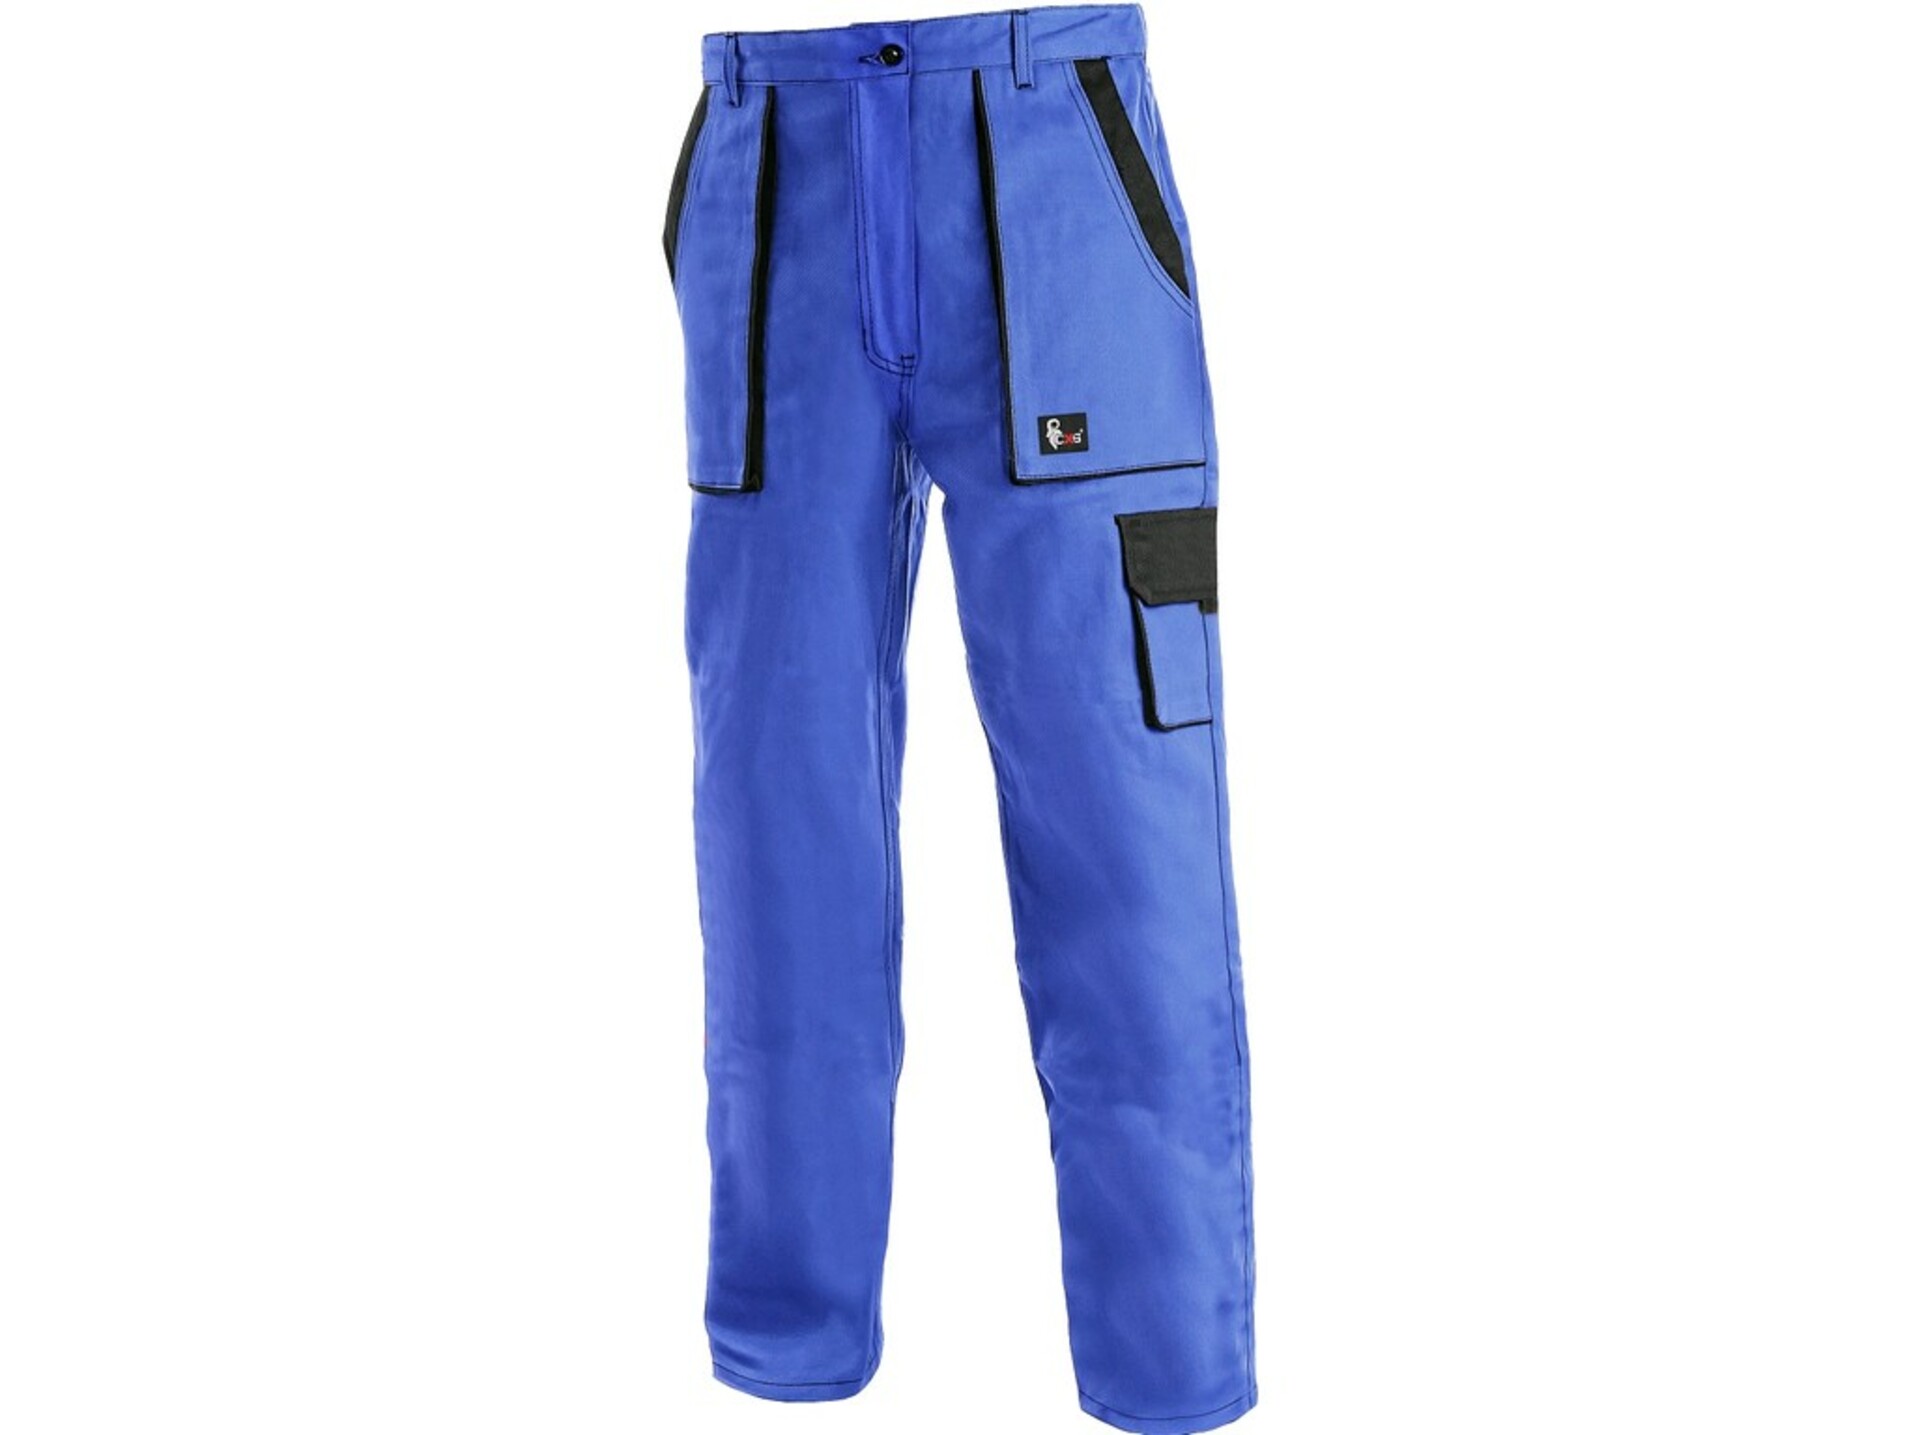 CXS LUX ELENA dámské Kalhoty pracovní do pasu modré 42